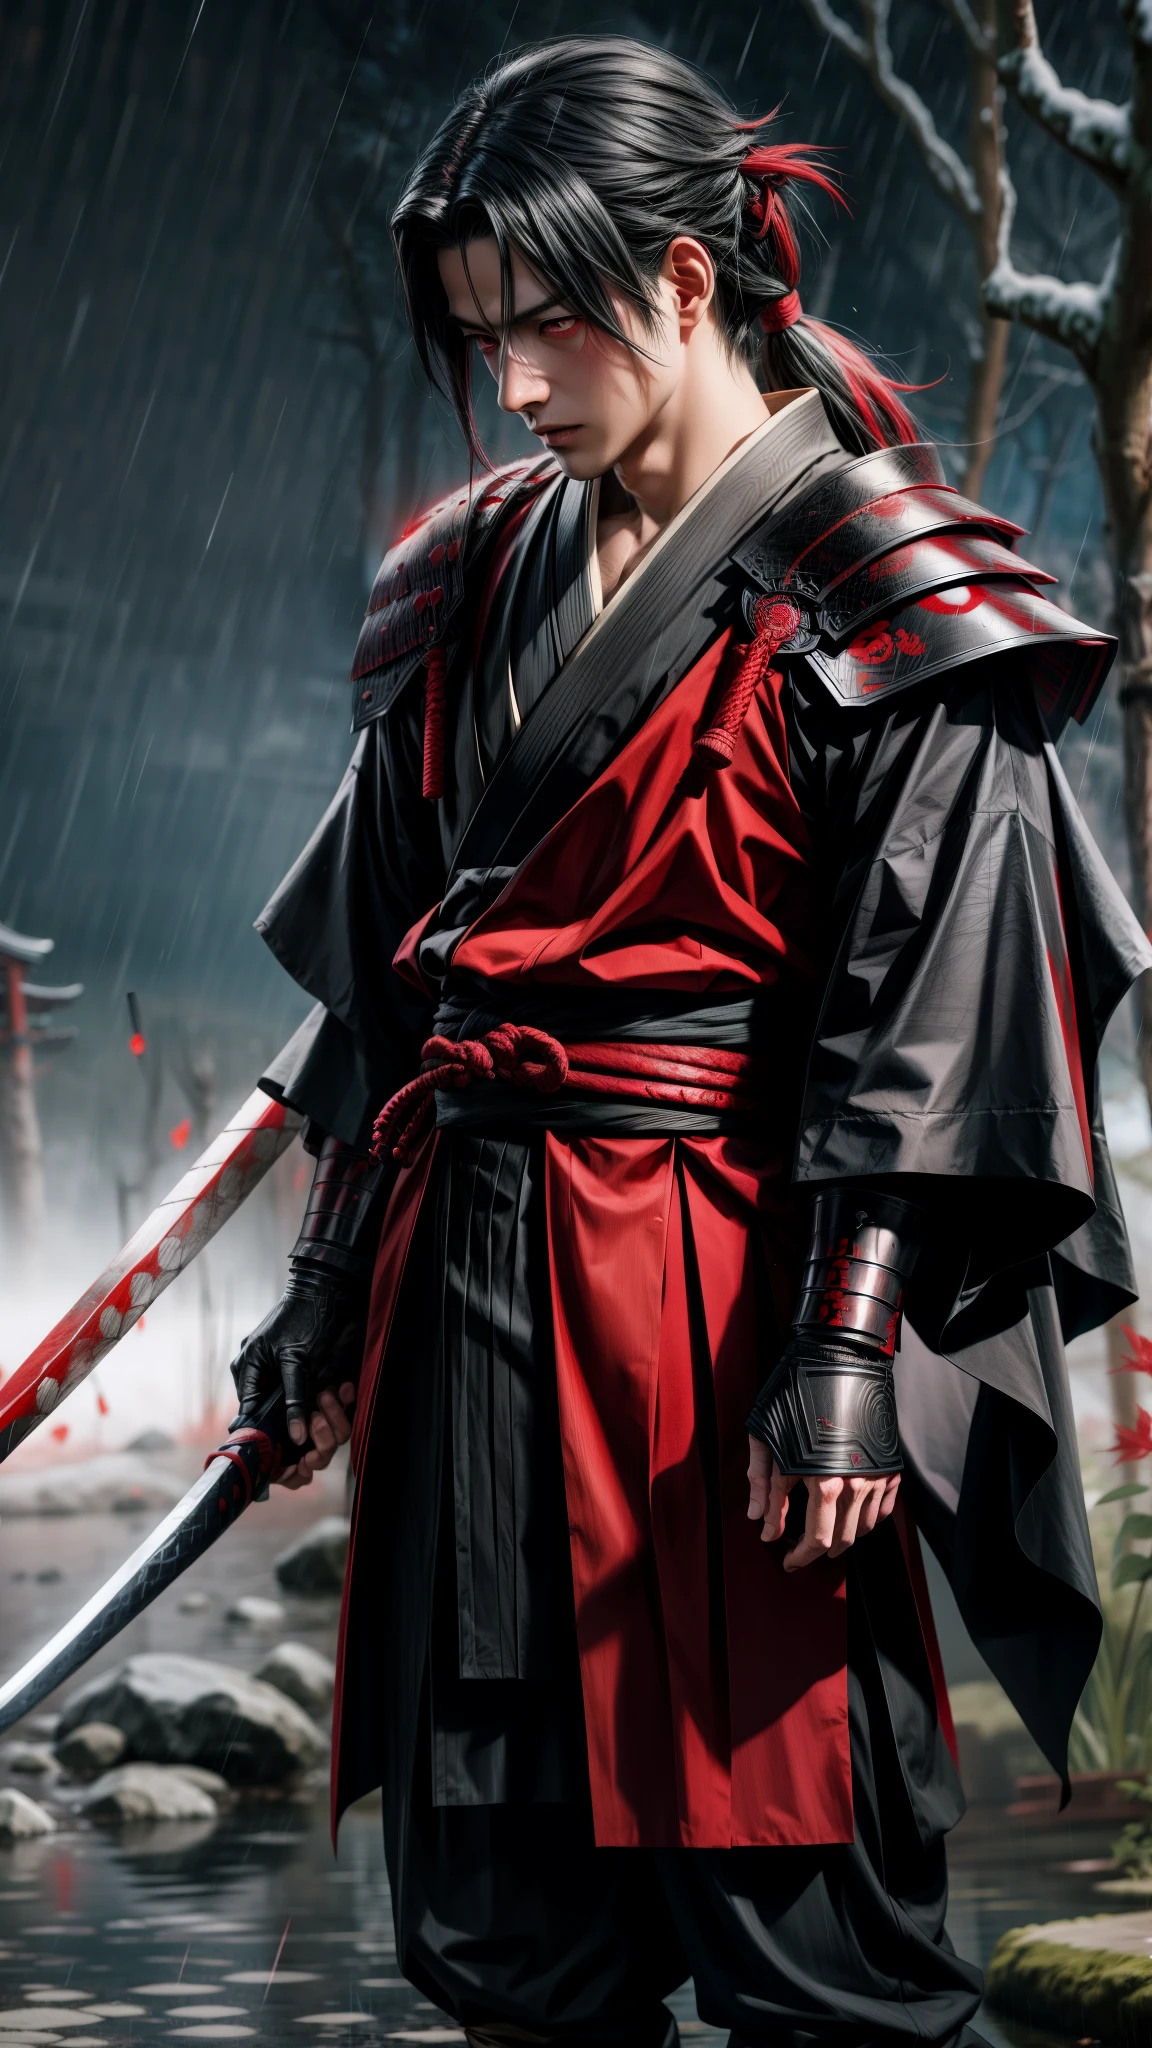 Uchiha Madara red eyes with full set zirah armor and samurai in hand standing in the rain, inspired by Kanō Sanraku, inspired by Kanō Hōgai, samurai man vagabond, itachi uchiha, itatchi uchiha, inspired by Tōshūsai Sharaku, akatsuki akira, urban samurai, from kenshin, madara uchiha extreme realistic